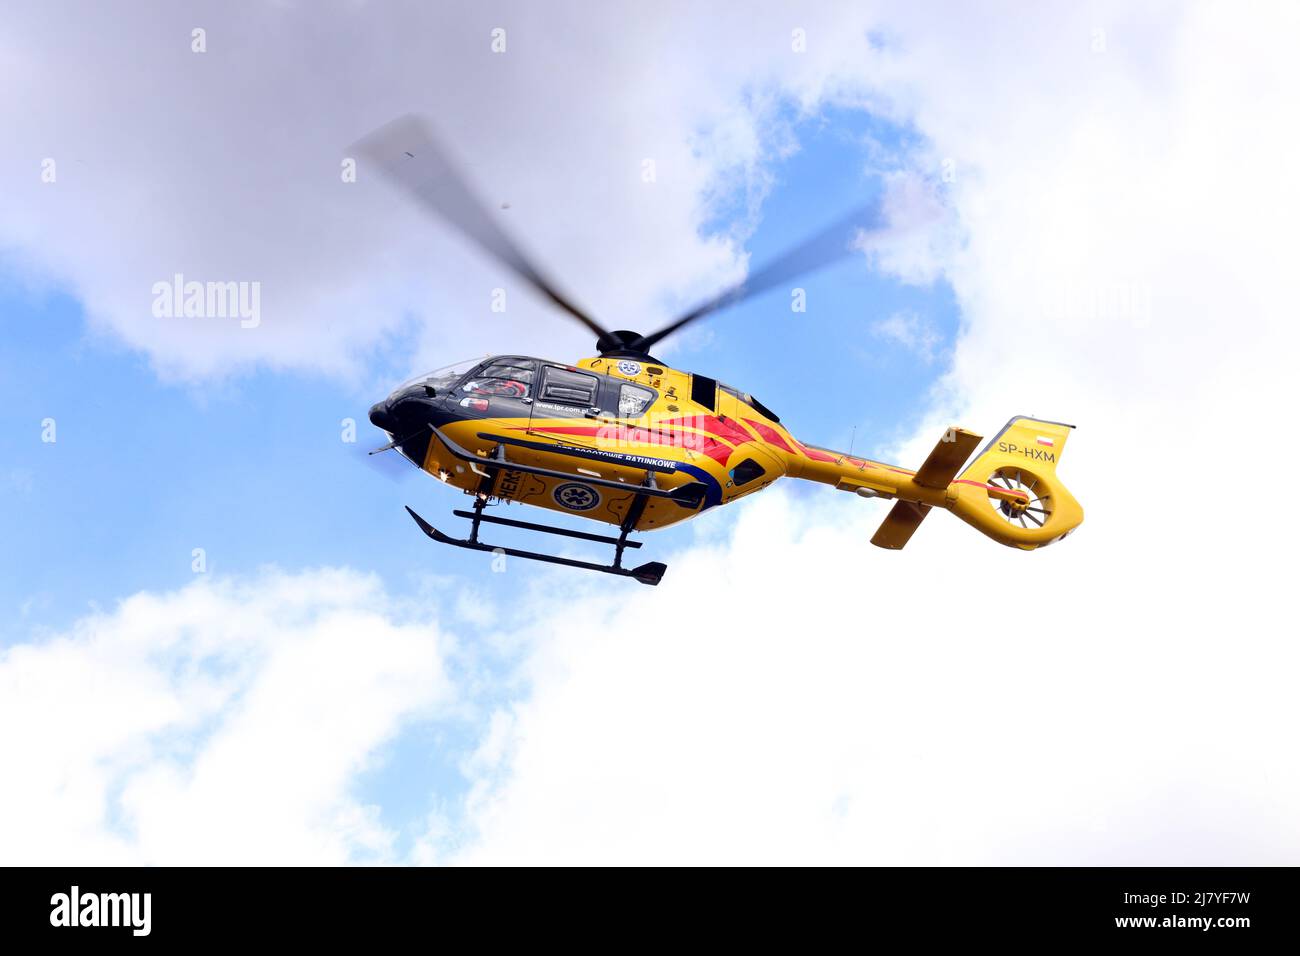 Cracovie. Cracovie. Pologne. L'hélicoptère de sauvetage aérien Eurocopter EC1352 est aéroporté pendant l'exercice d'entraînement d'accident simulé de victimes massives. Banque D'Images